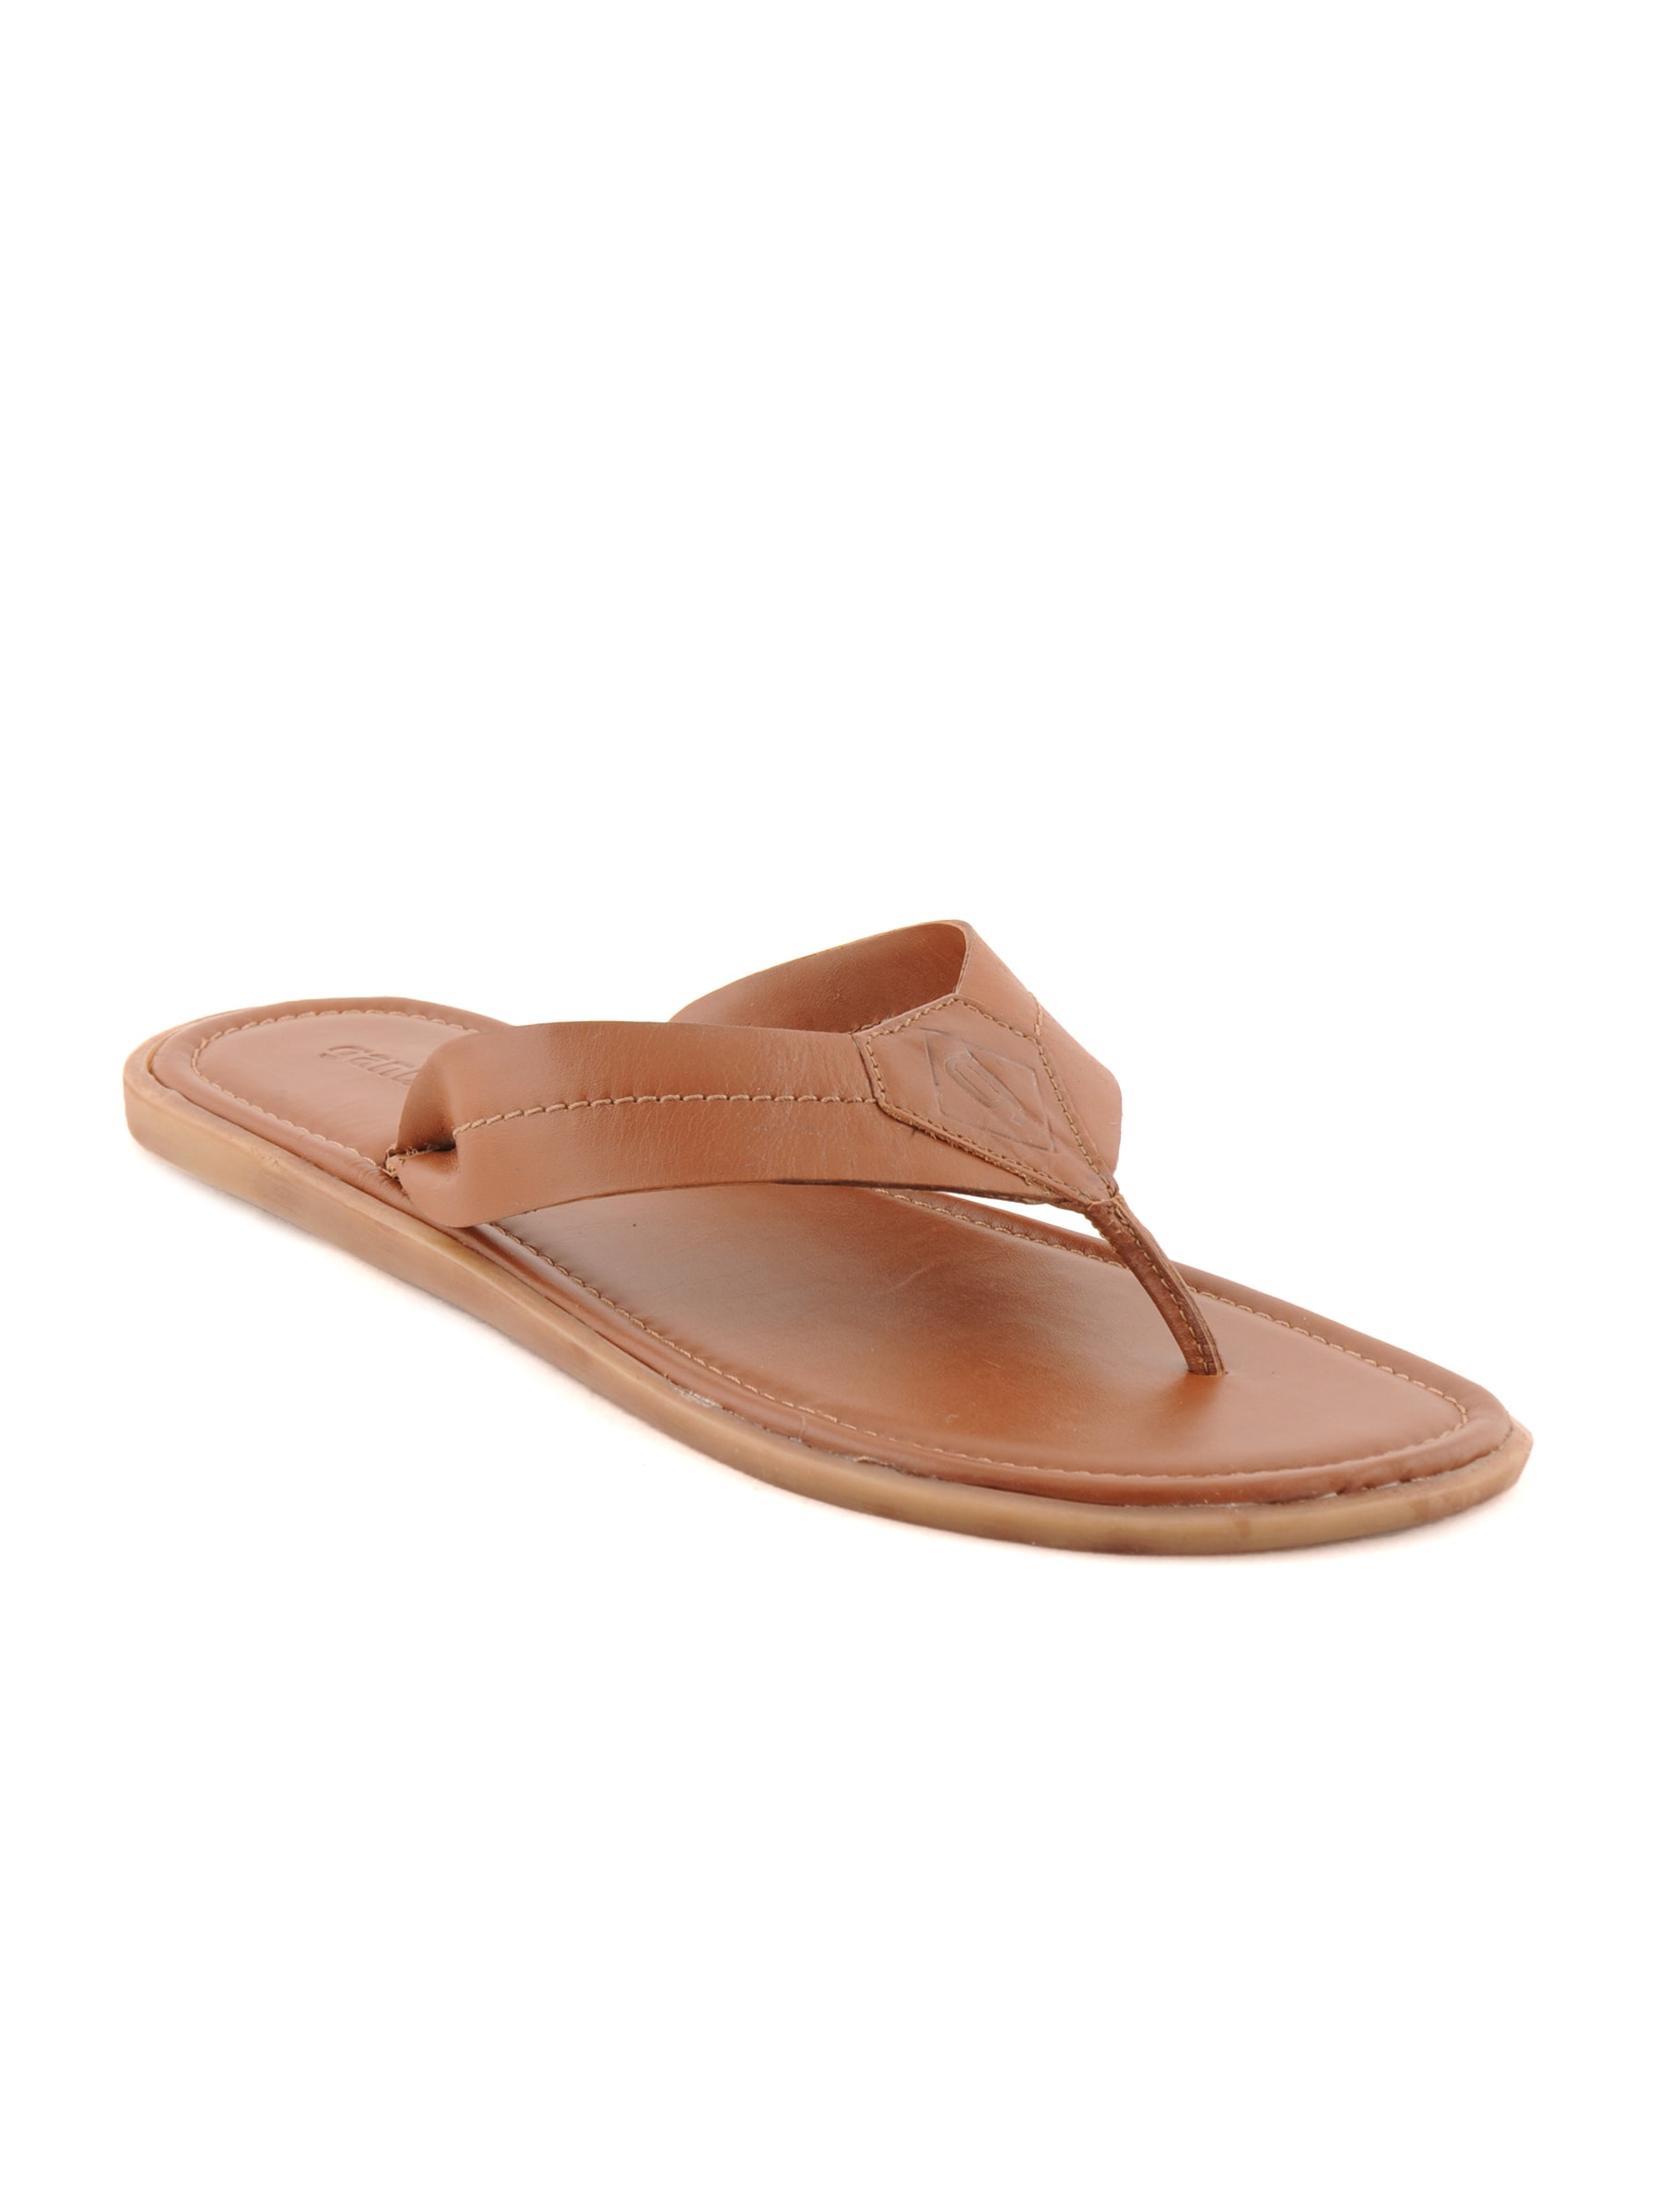 Ganuchi Men Casual Tan Sandals